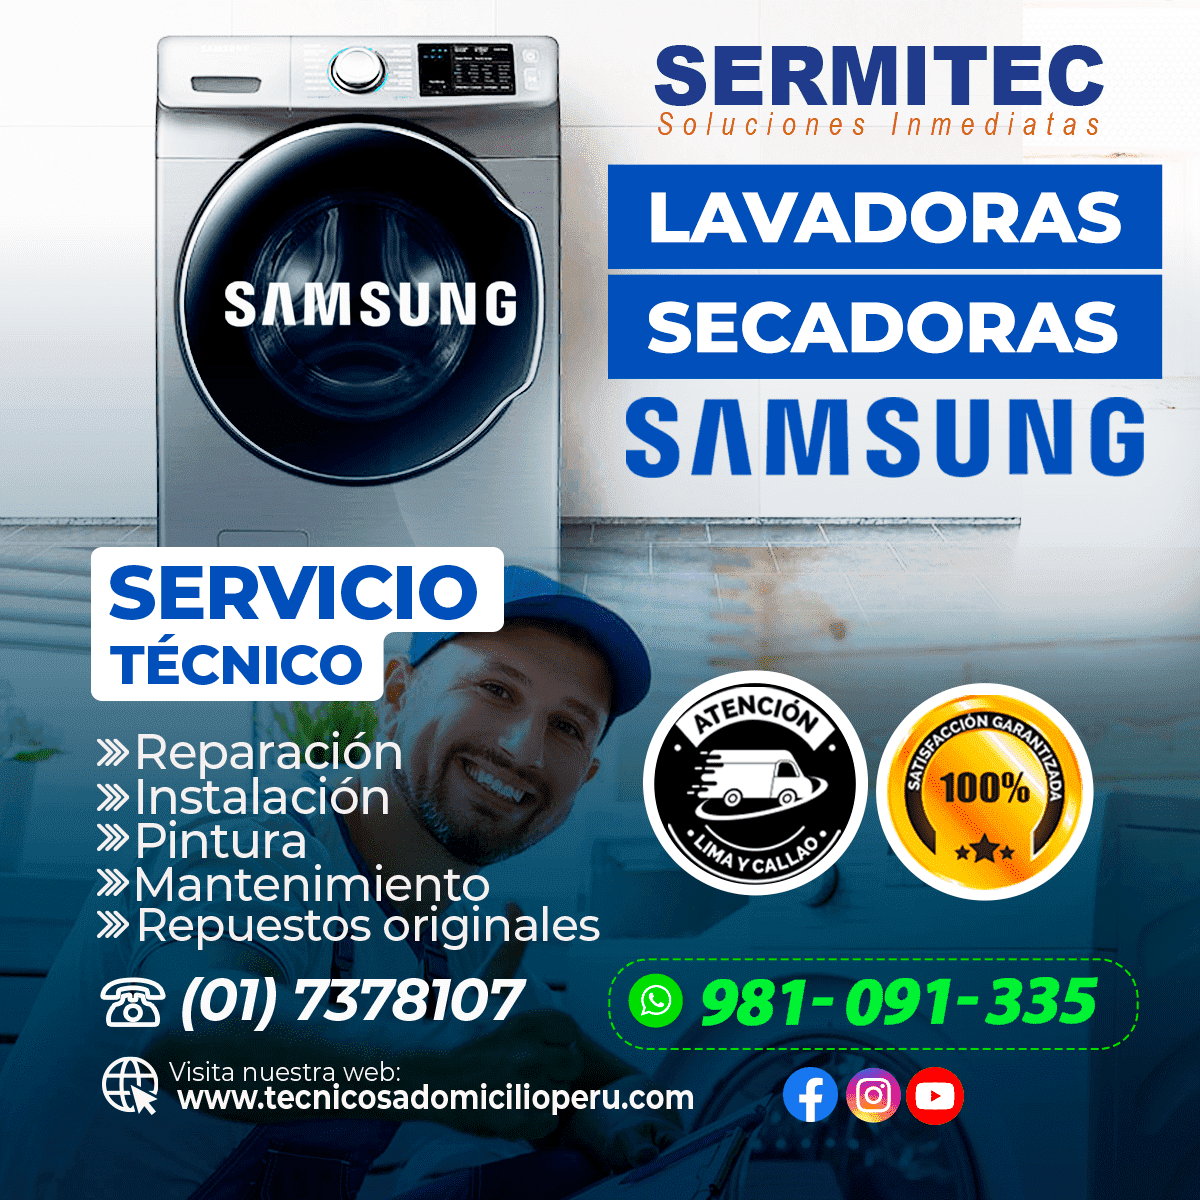 SOLUCIONES TECNICAS DE LAVADORAS SAMSUNG en SAN ISIDRO 981091335